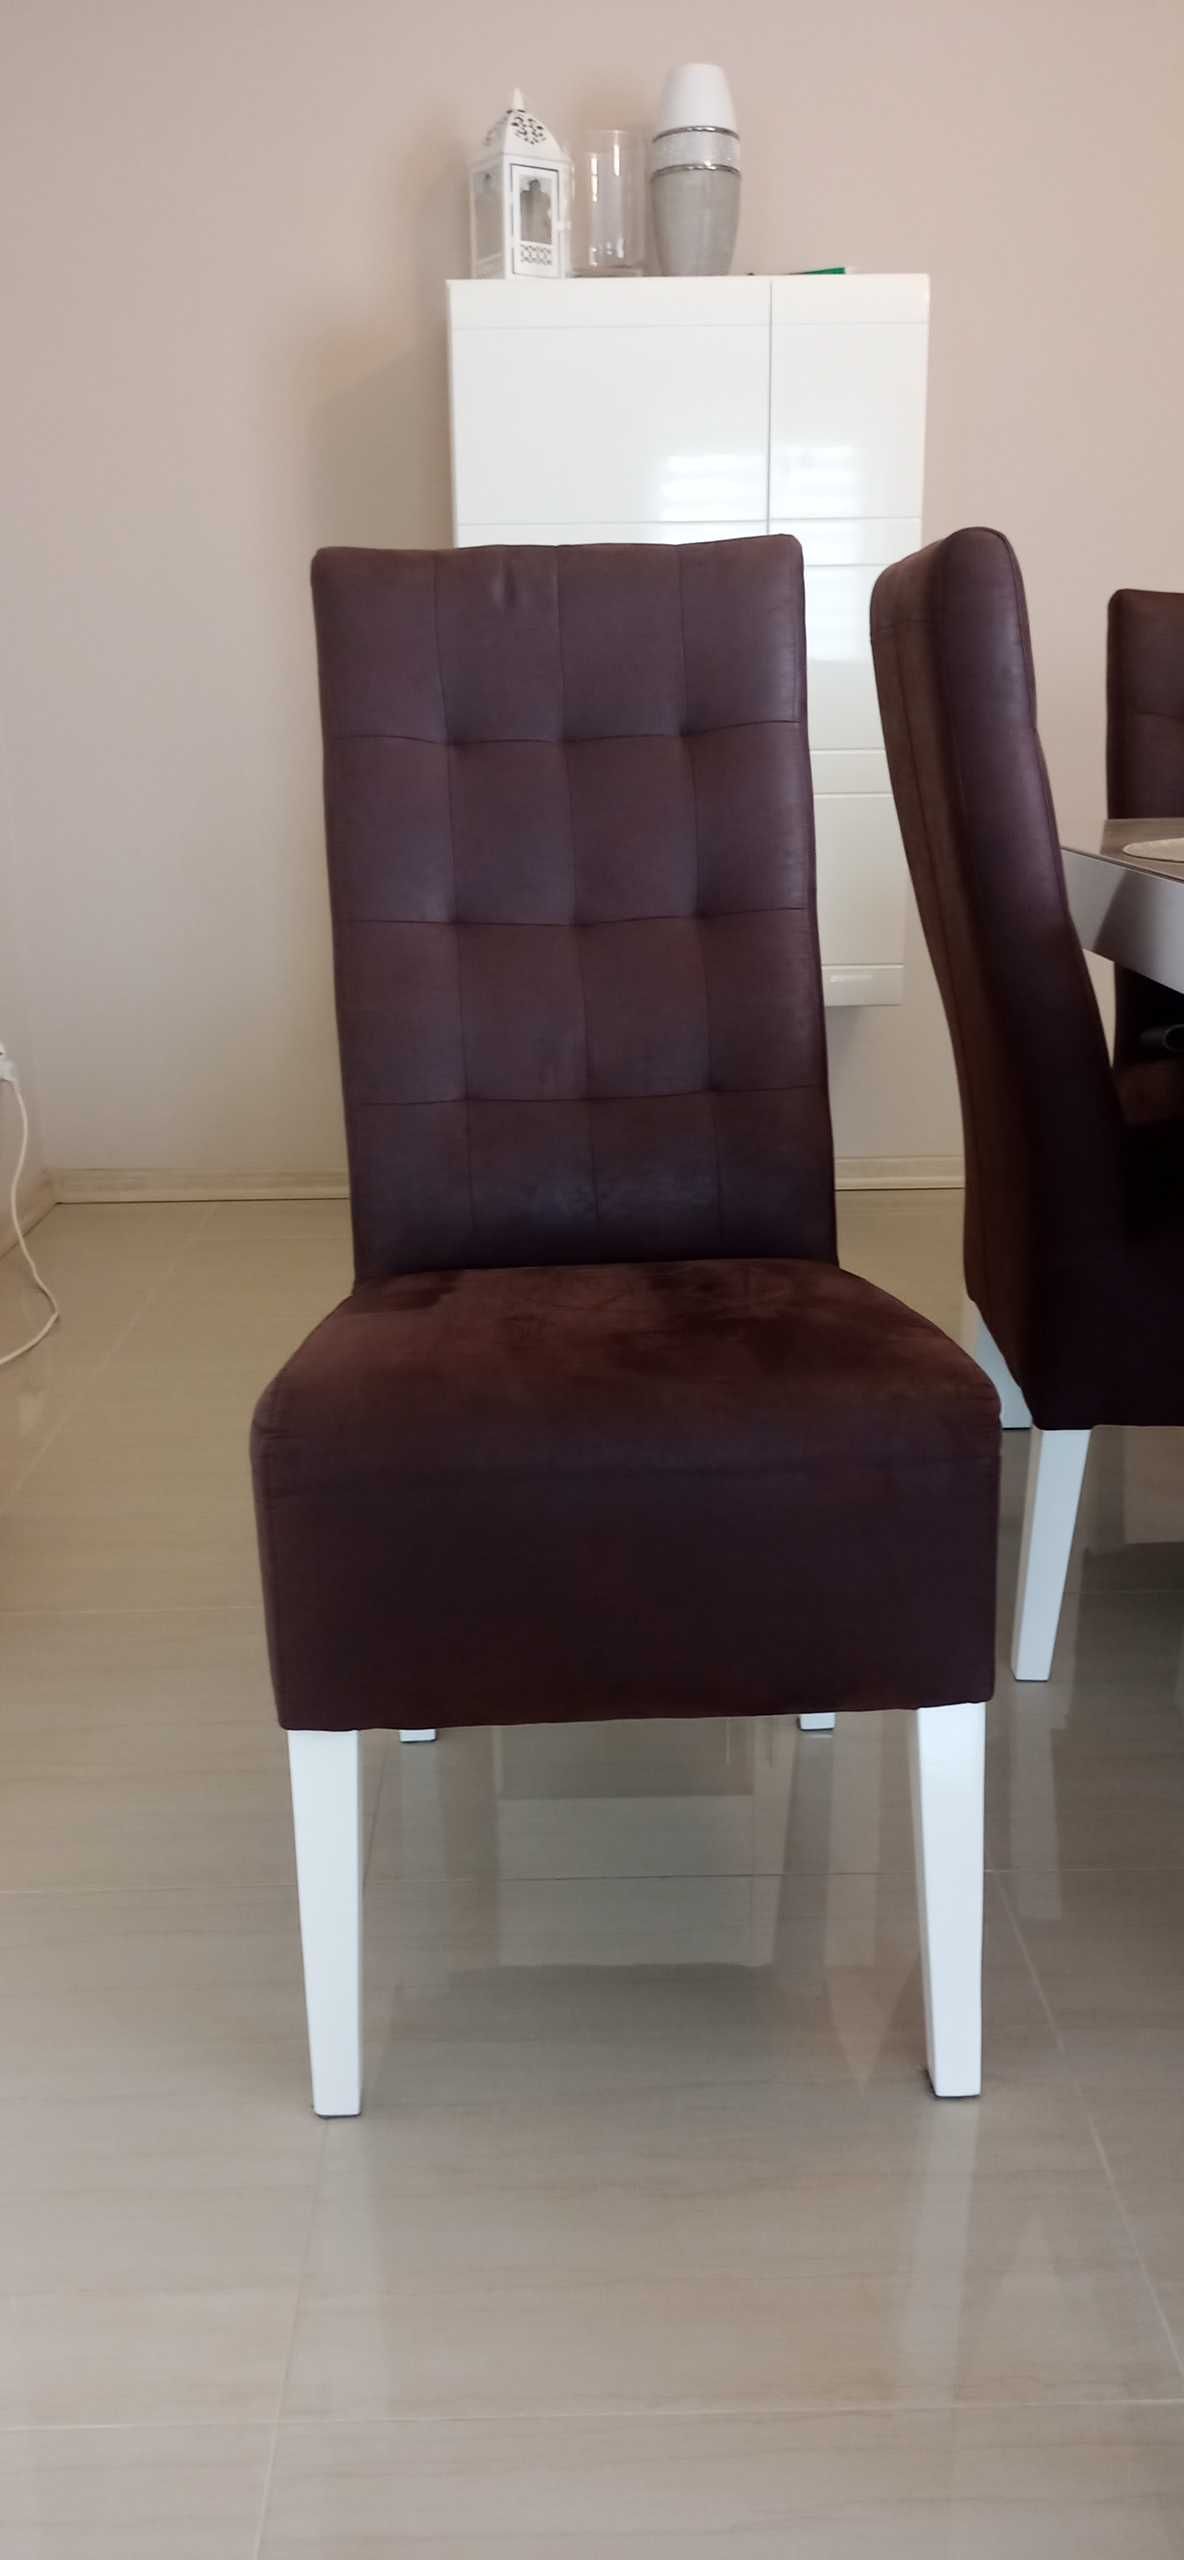 Komplet stół+krzesła(fotele) do salonu